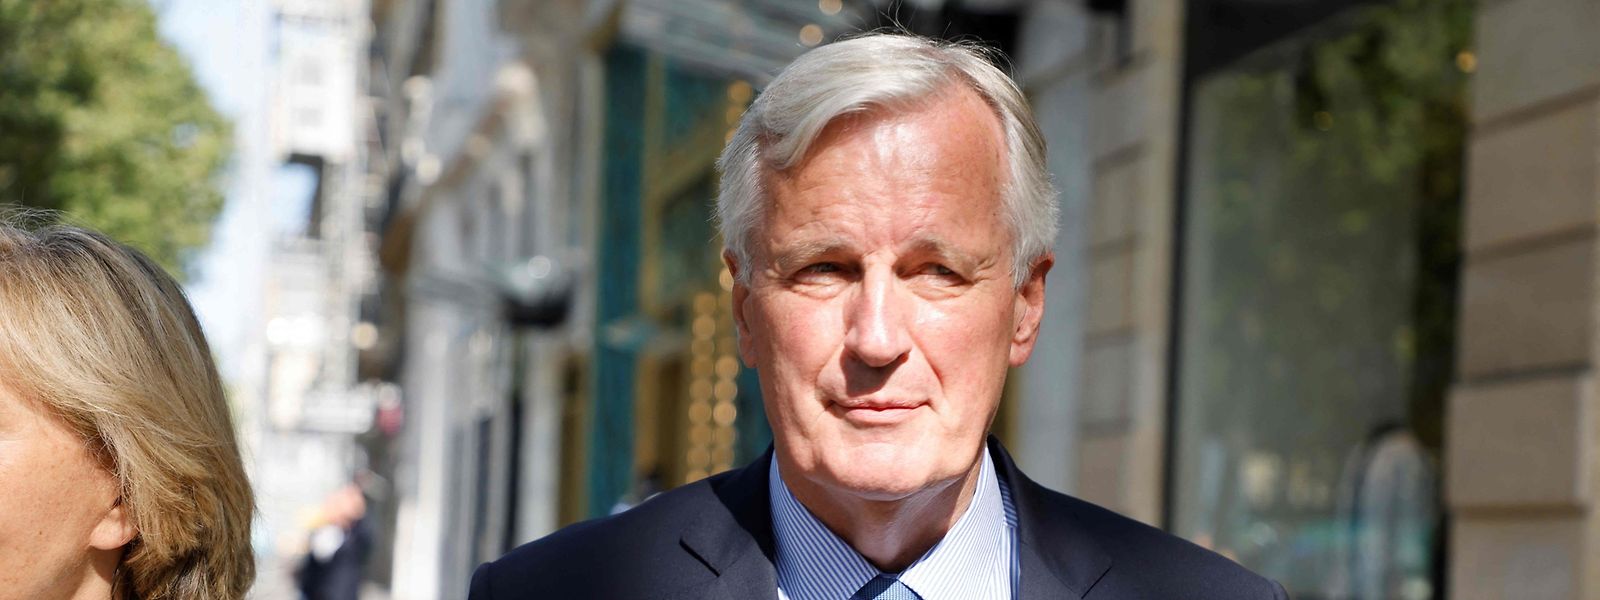 Mit Michel Barnier (Foto) erklärt ein politisches Schwergewicht seine Kandidatur für das Präsidentenamt in Frankreich. Er will für die konservativen Républicains antreten.